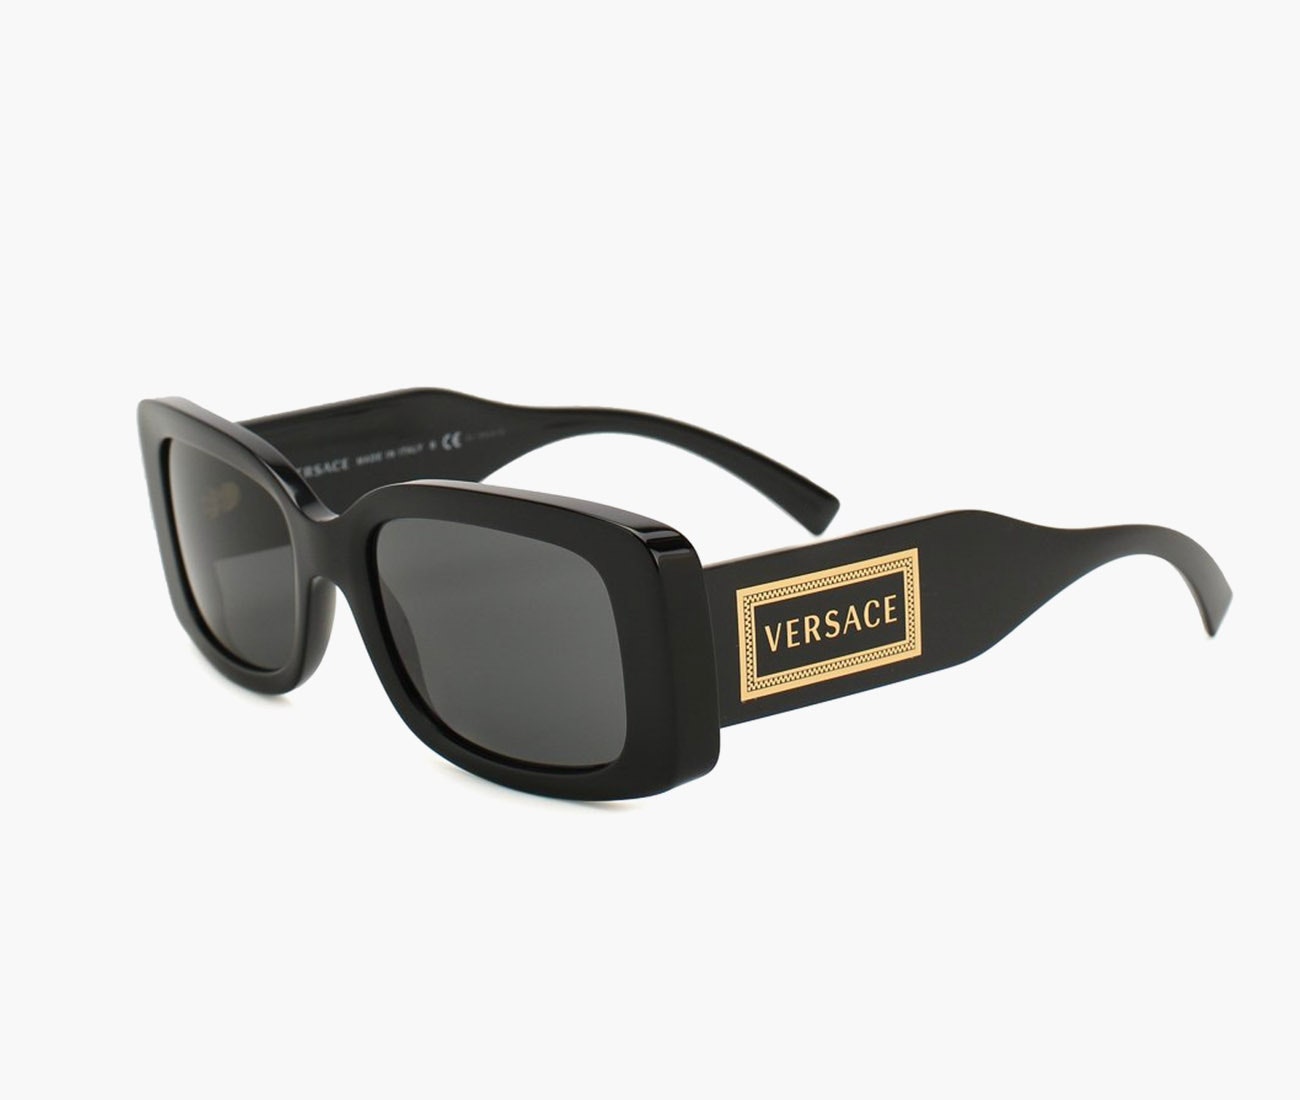 Солнцезащитные очки Versace 14700 рублей tsum.ru